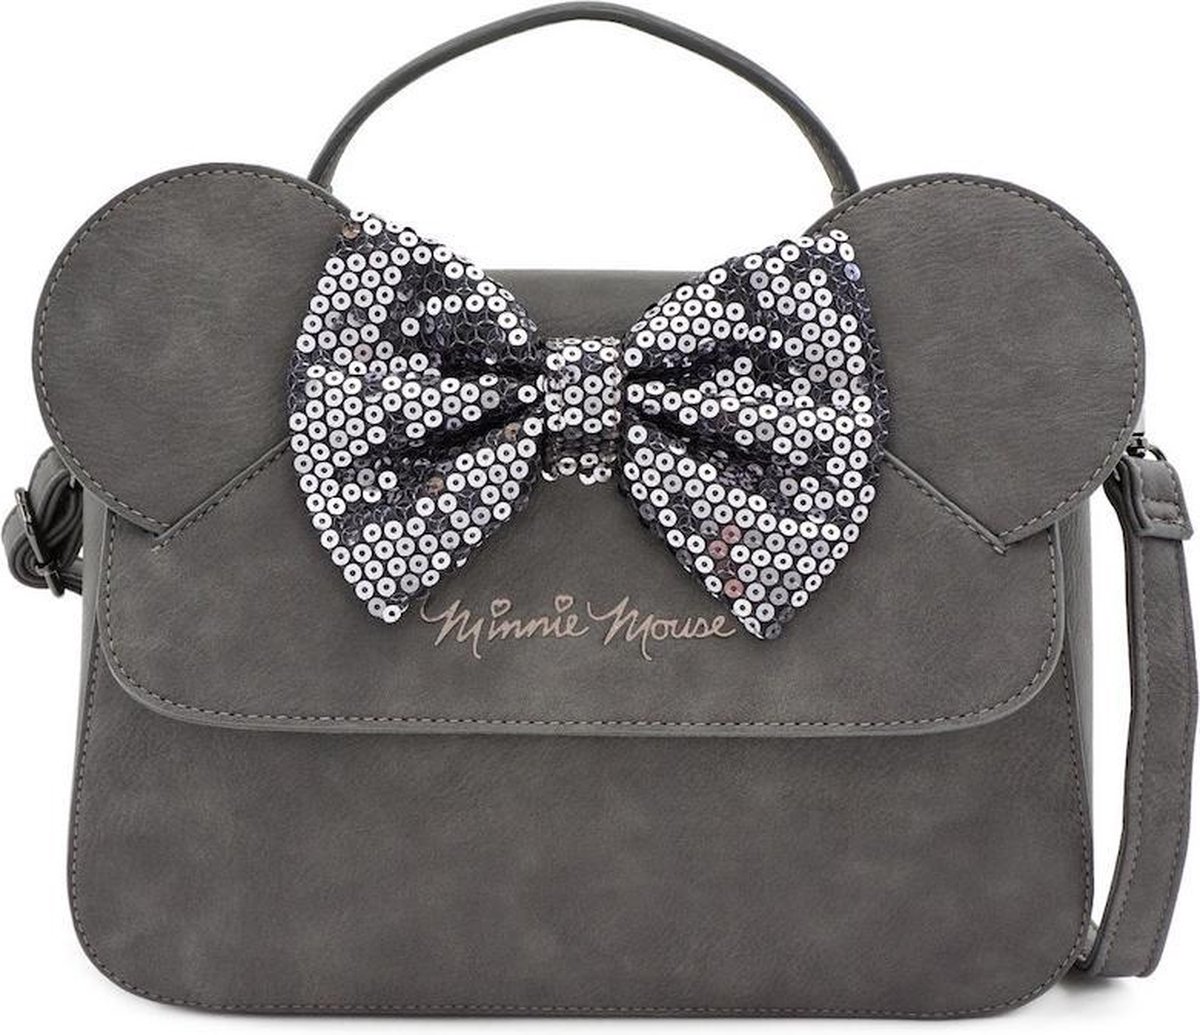 Tassen & portemonnees Handtassen Handtassen met kort handvat 8 "x8" x2 " Mickey Mouse Multi-Use Pouch Bag met zijvak en rode stip binnenkant 